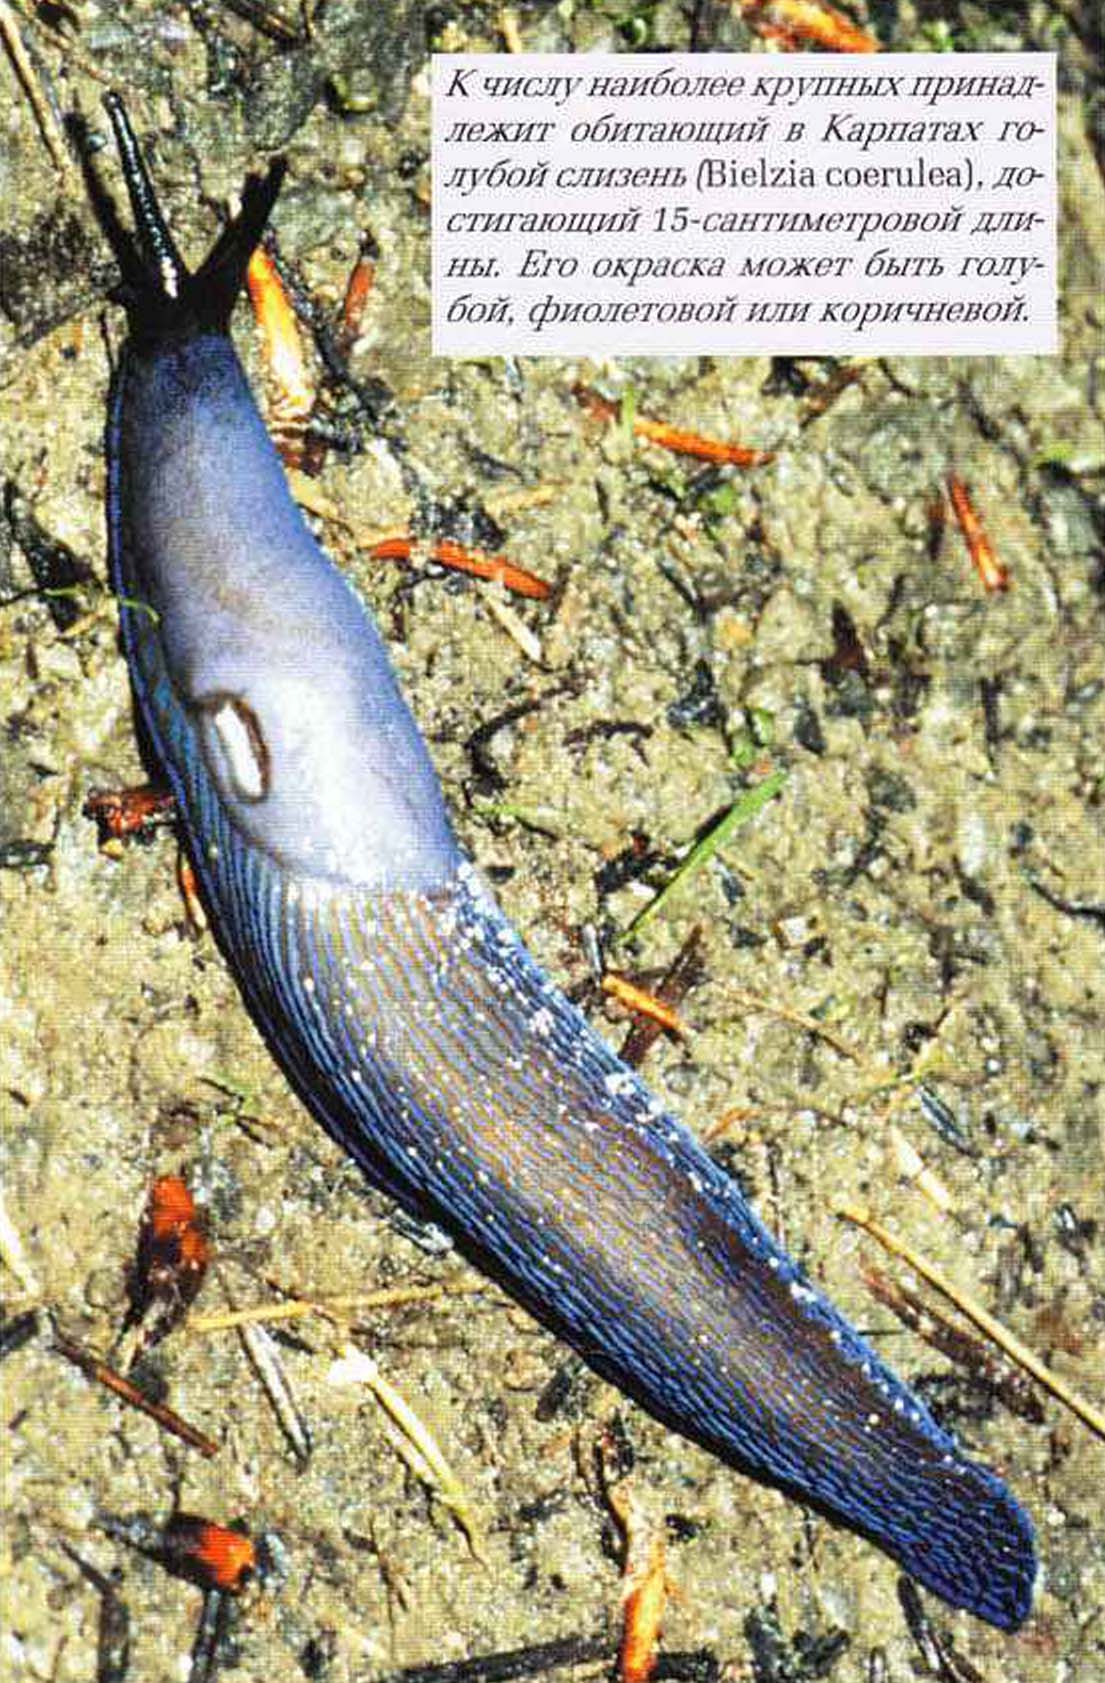 К числу наиболее крупных принадлежит обитающий в Карпатах голубой слизень (Bielzia coerulea), достигающий 15-сантиметровой длины. Его окраска может быть голубой, фиолетовой или коричневой.